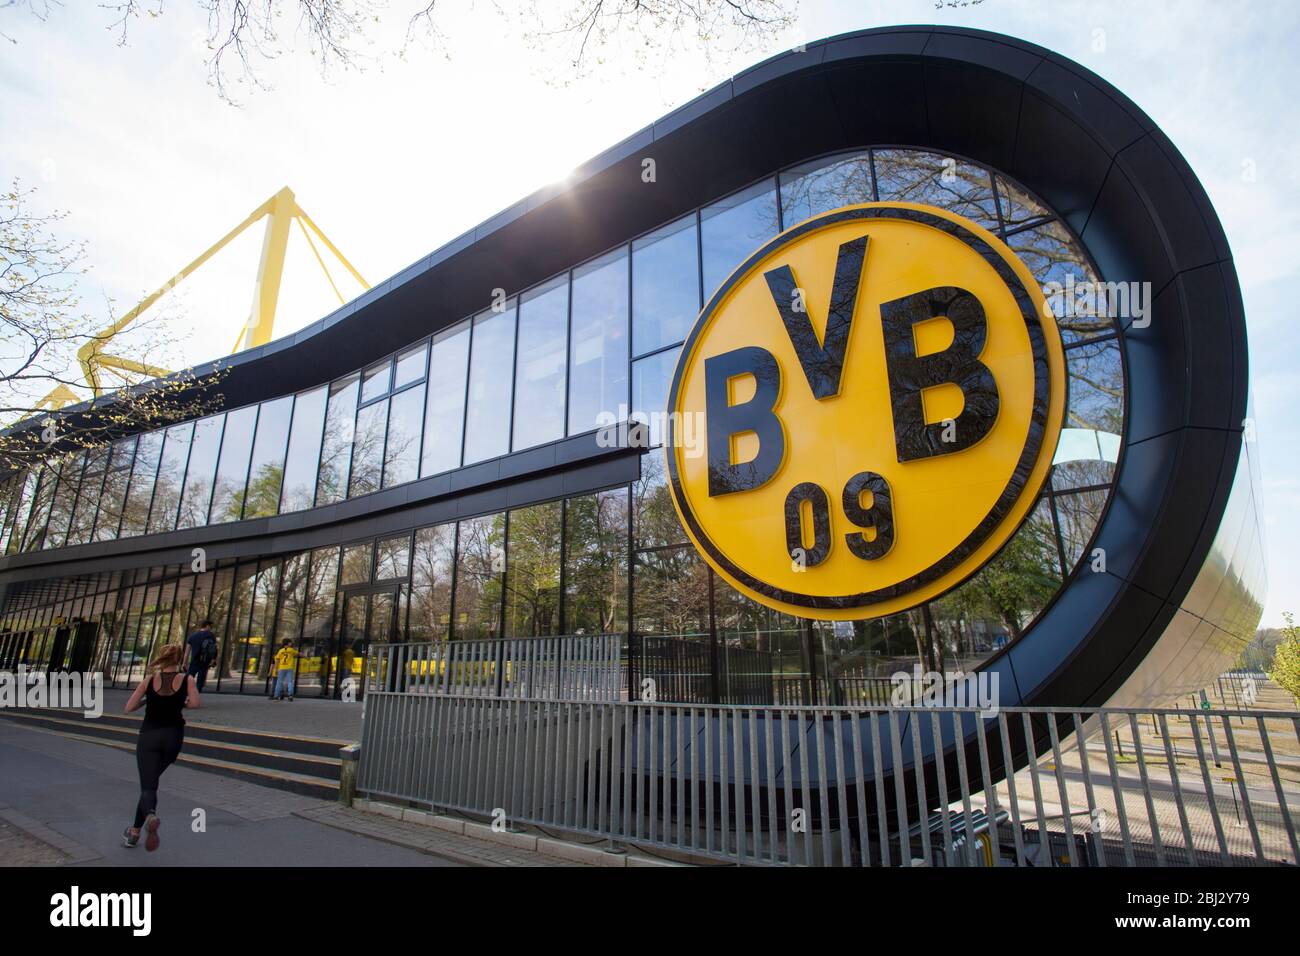 BVB Fan Shop BVB FanWelt della squadra di calcio Borussia Dortmund allo stadio Signal Iduna Park, Dortmund, Germania. BVB-Fanshop, BVB FanWelt am Stad Foto Stock